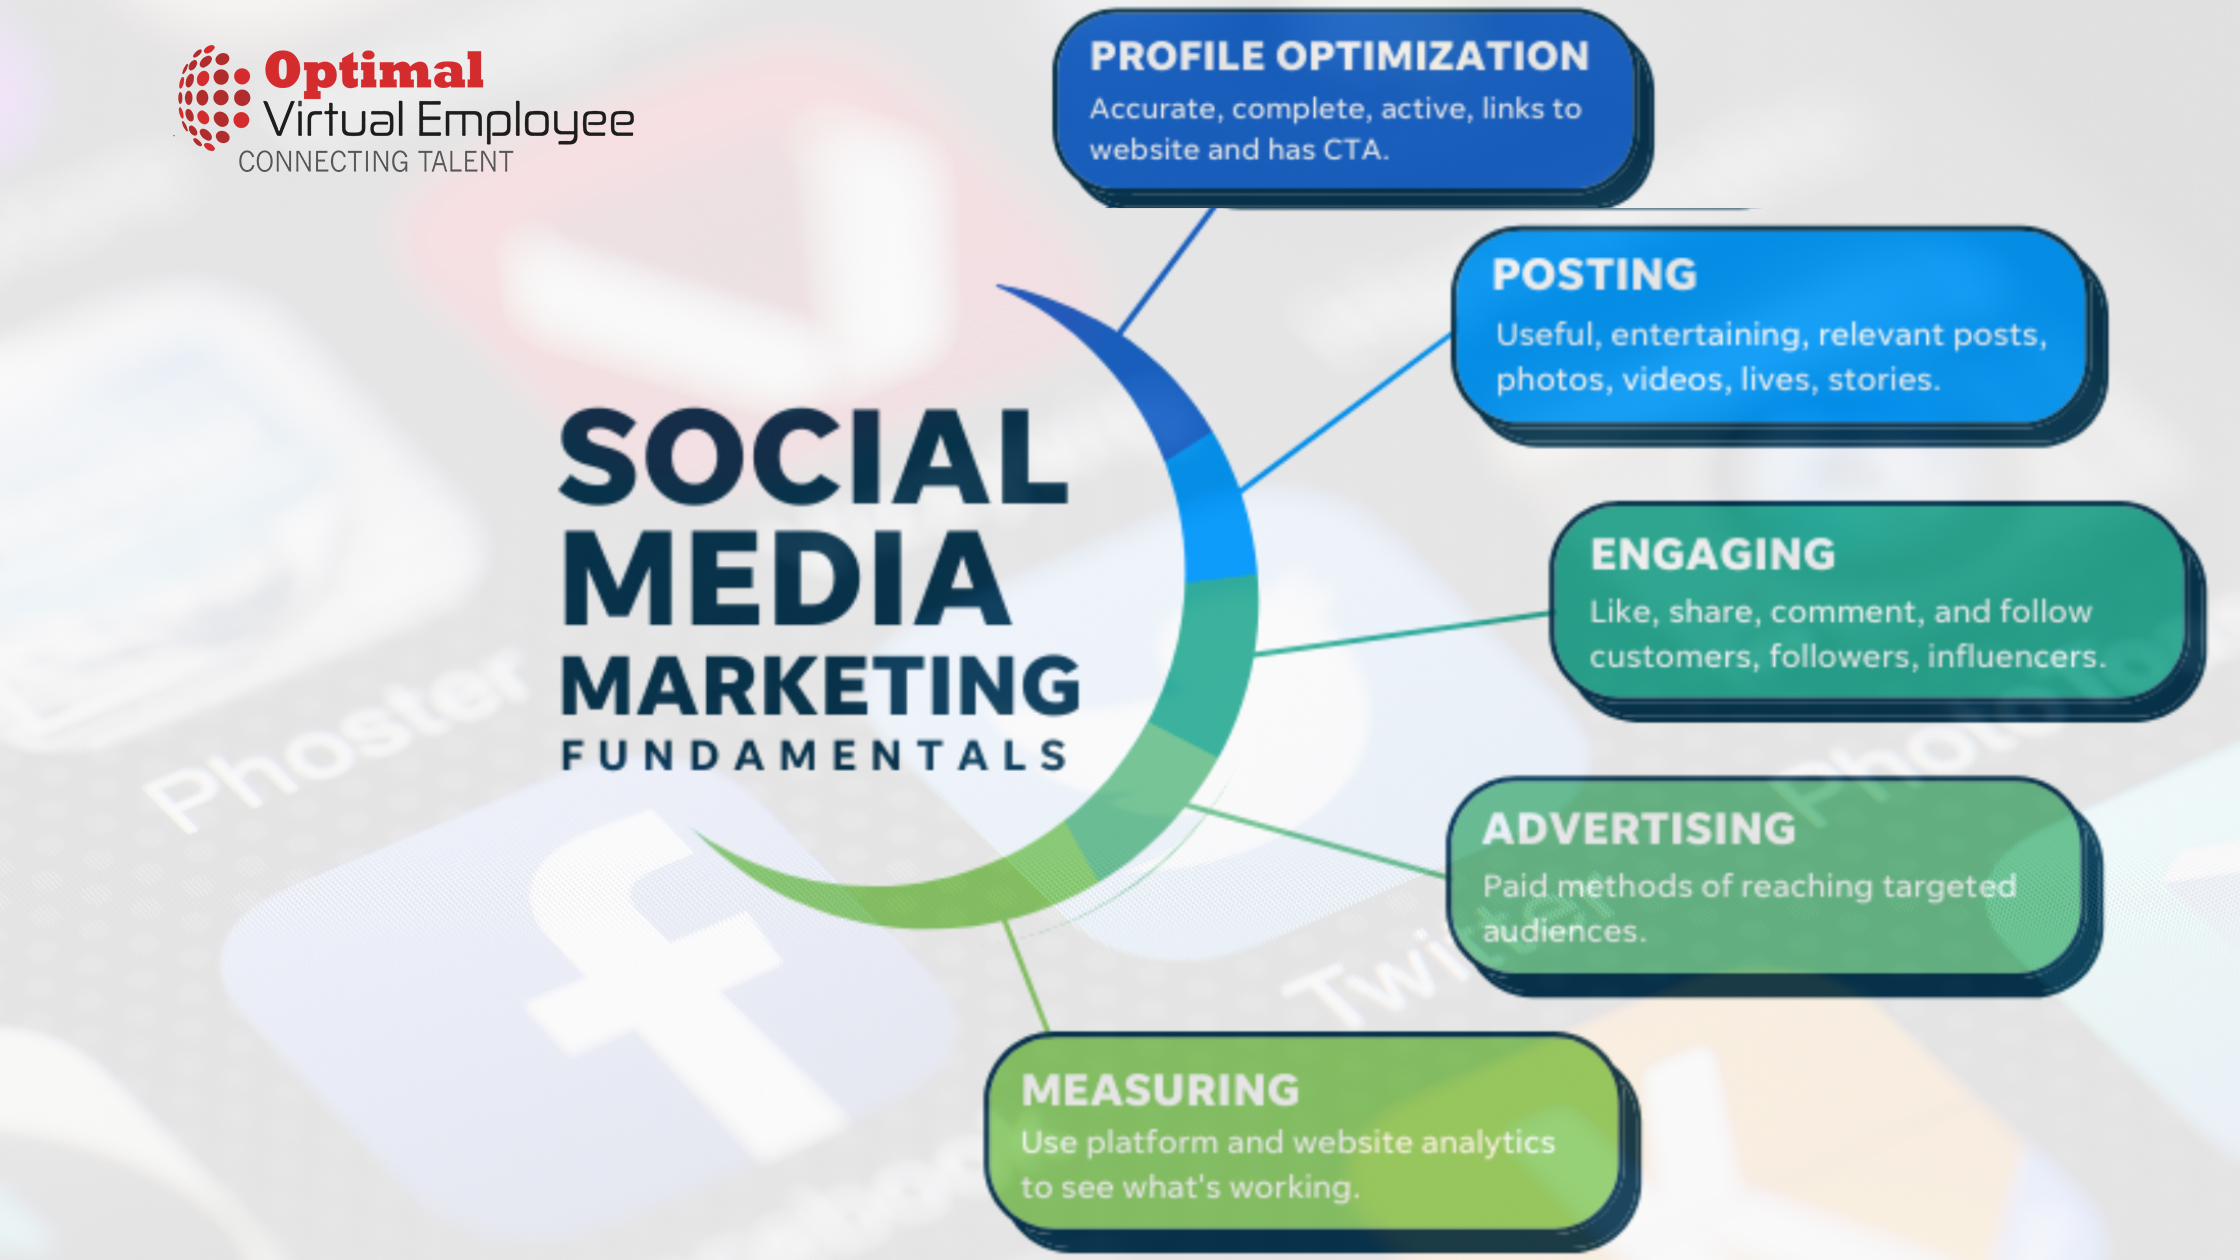 Social media marketing fundamentals